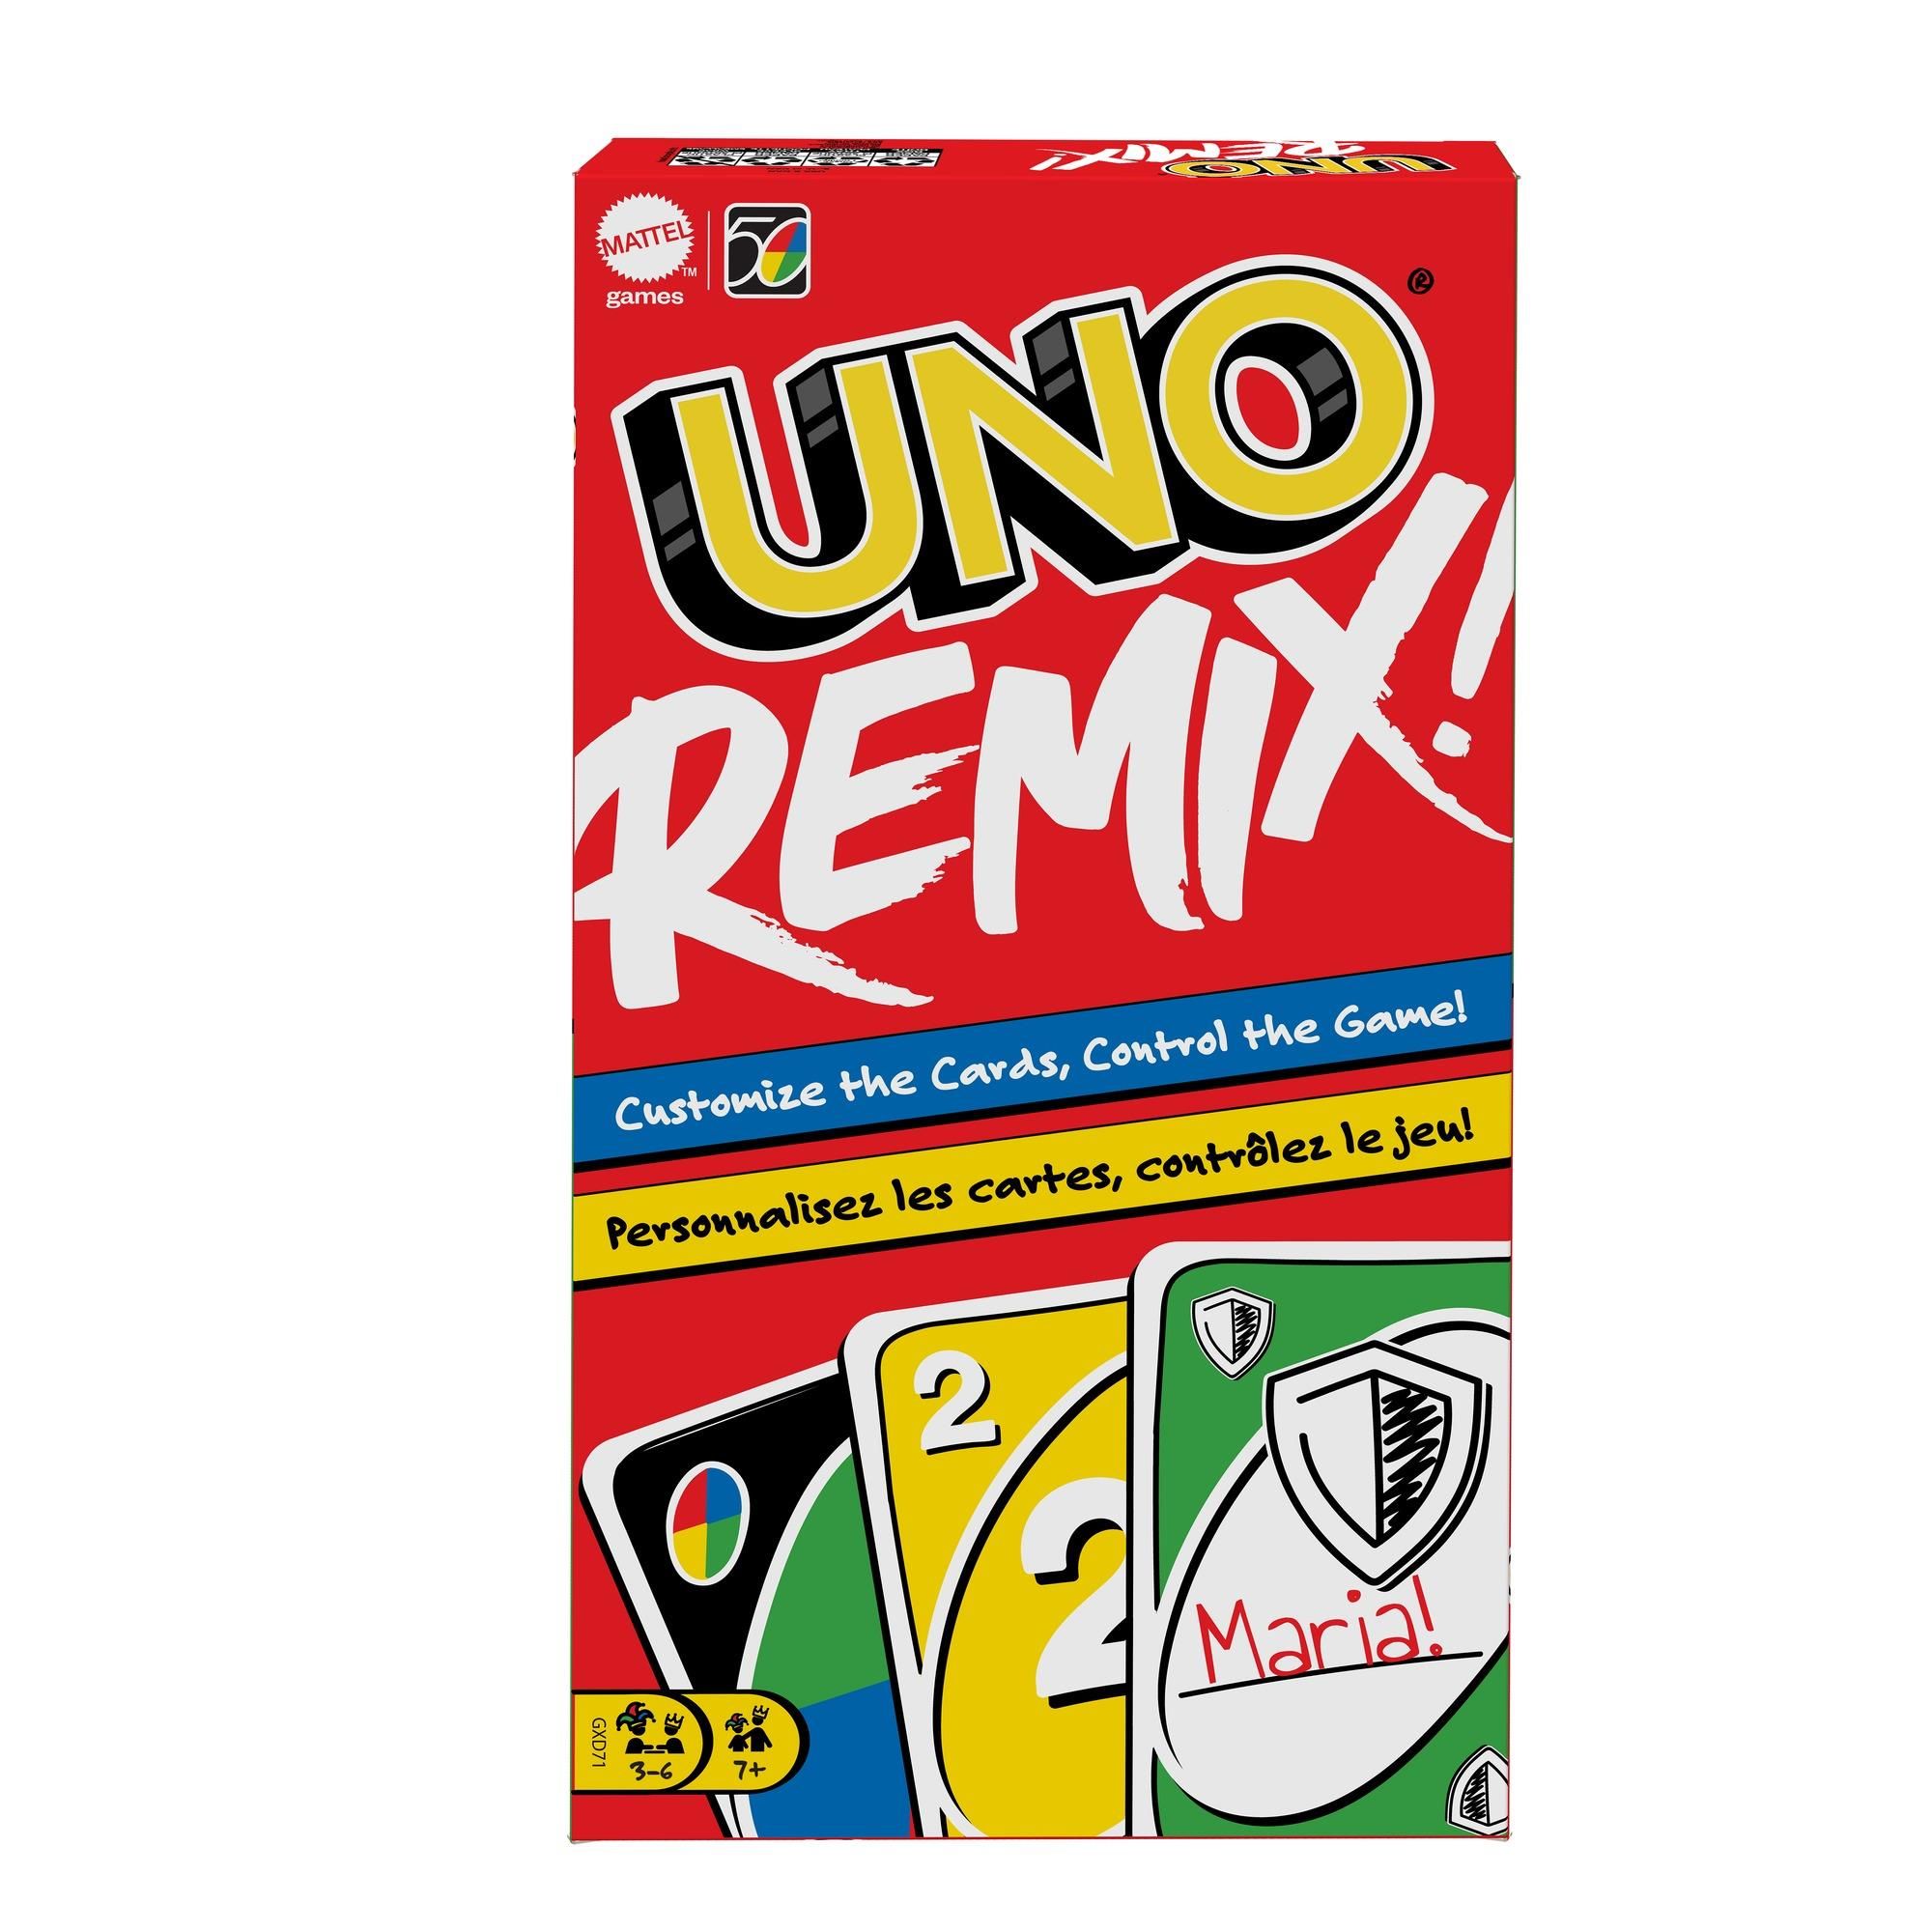 Mattel Games UNO Remix